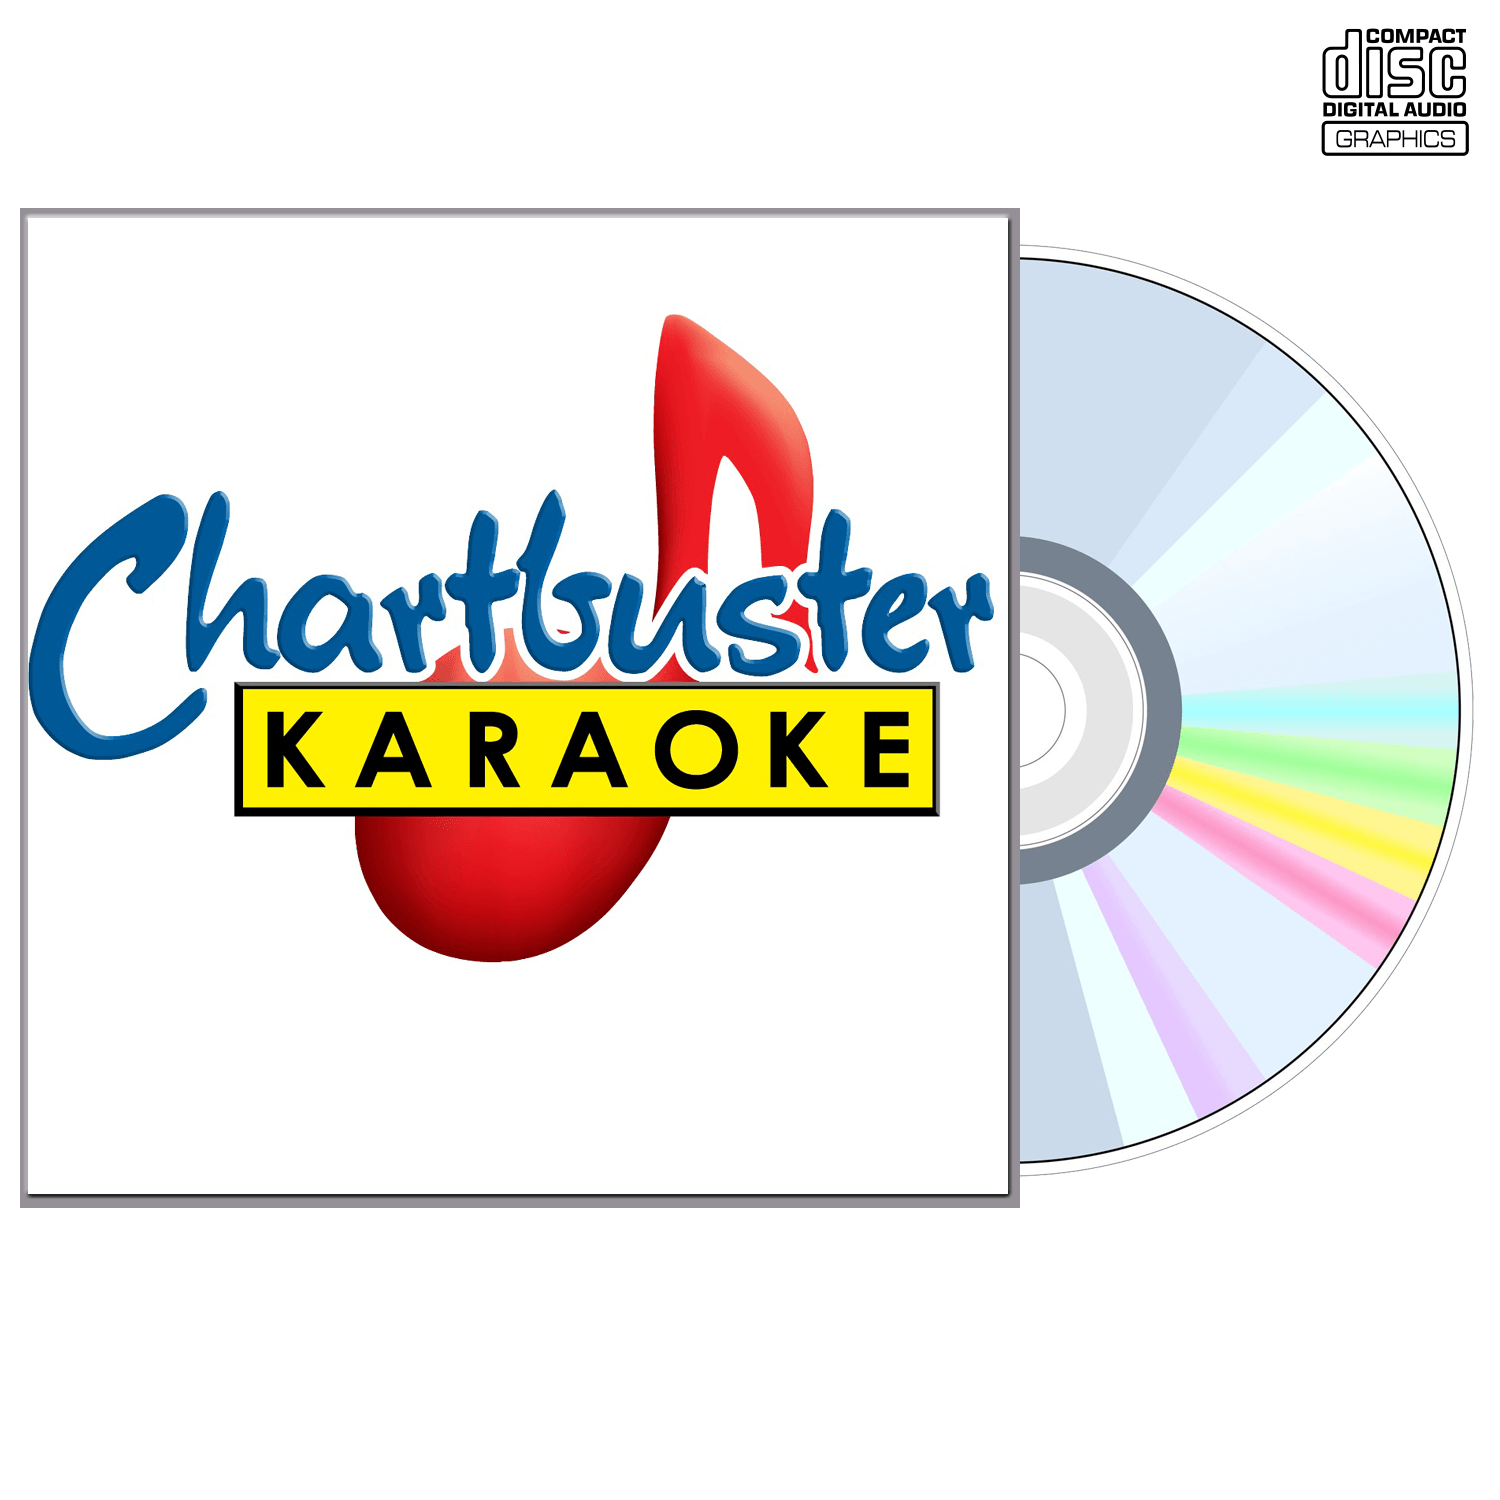 The Tractors - CD+G - Chartbuster Karaoke - Karaoke Home Entertainment